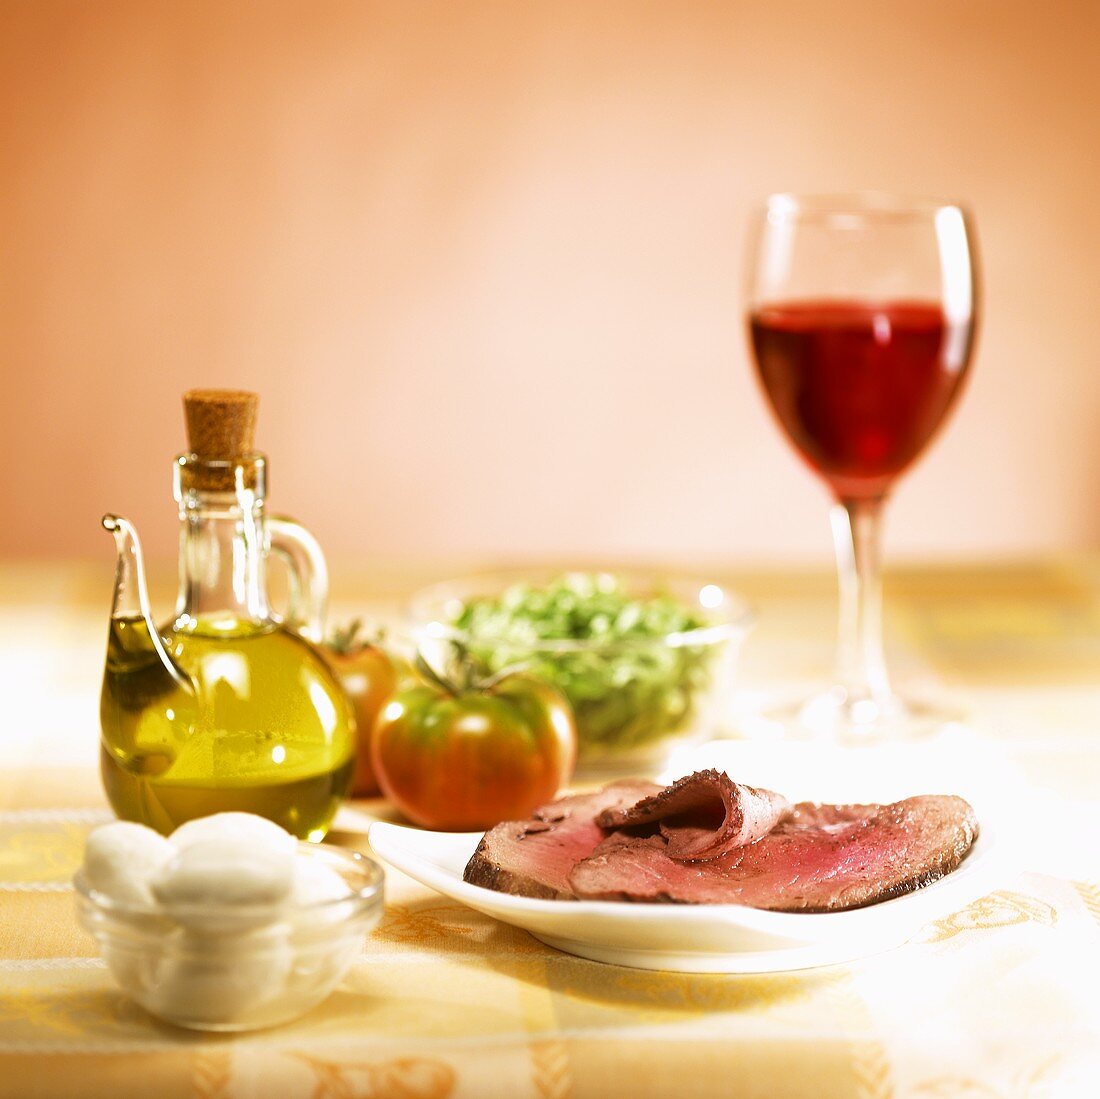 Zwiebelrostbraten mit Salatzutaten und Wein